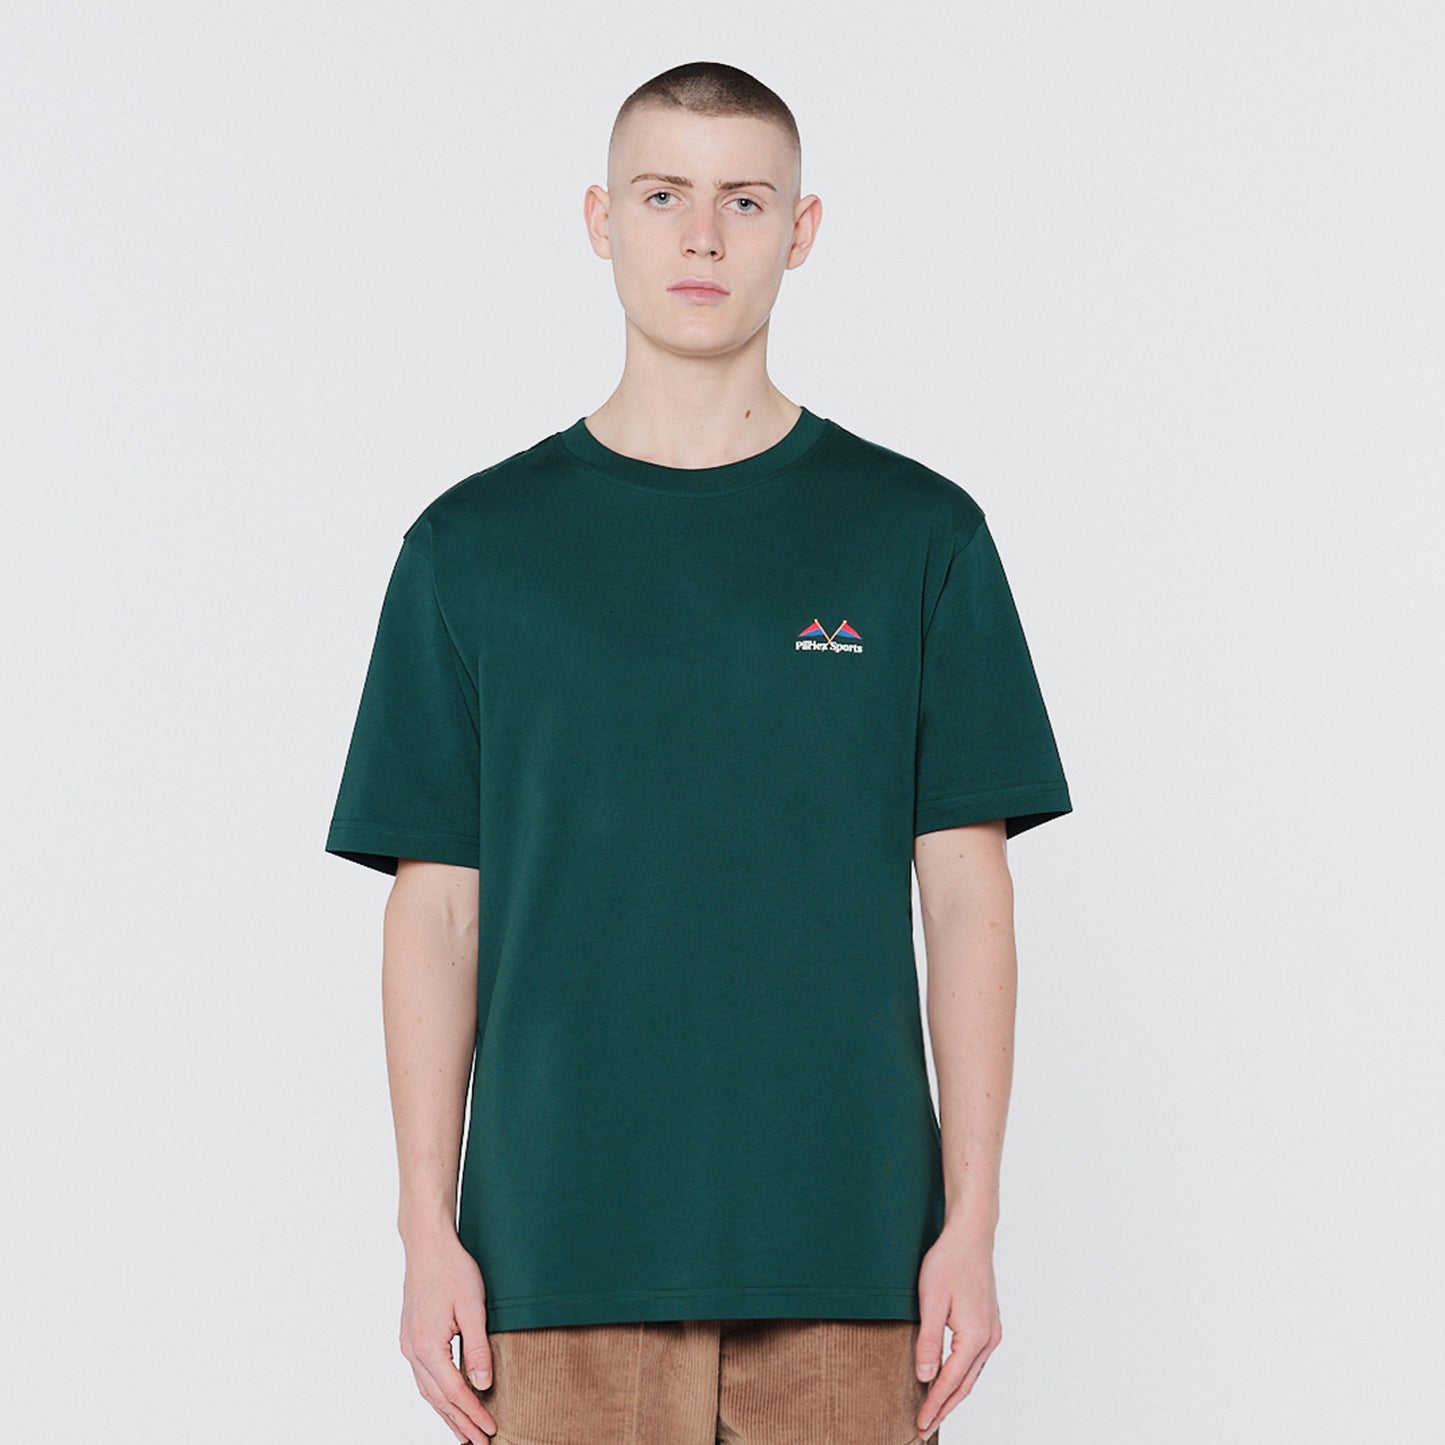 Yard T-Shirt Deep Green